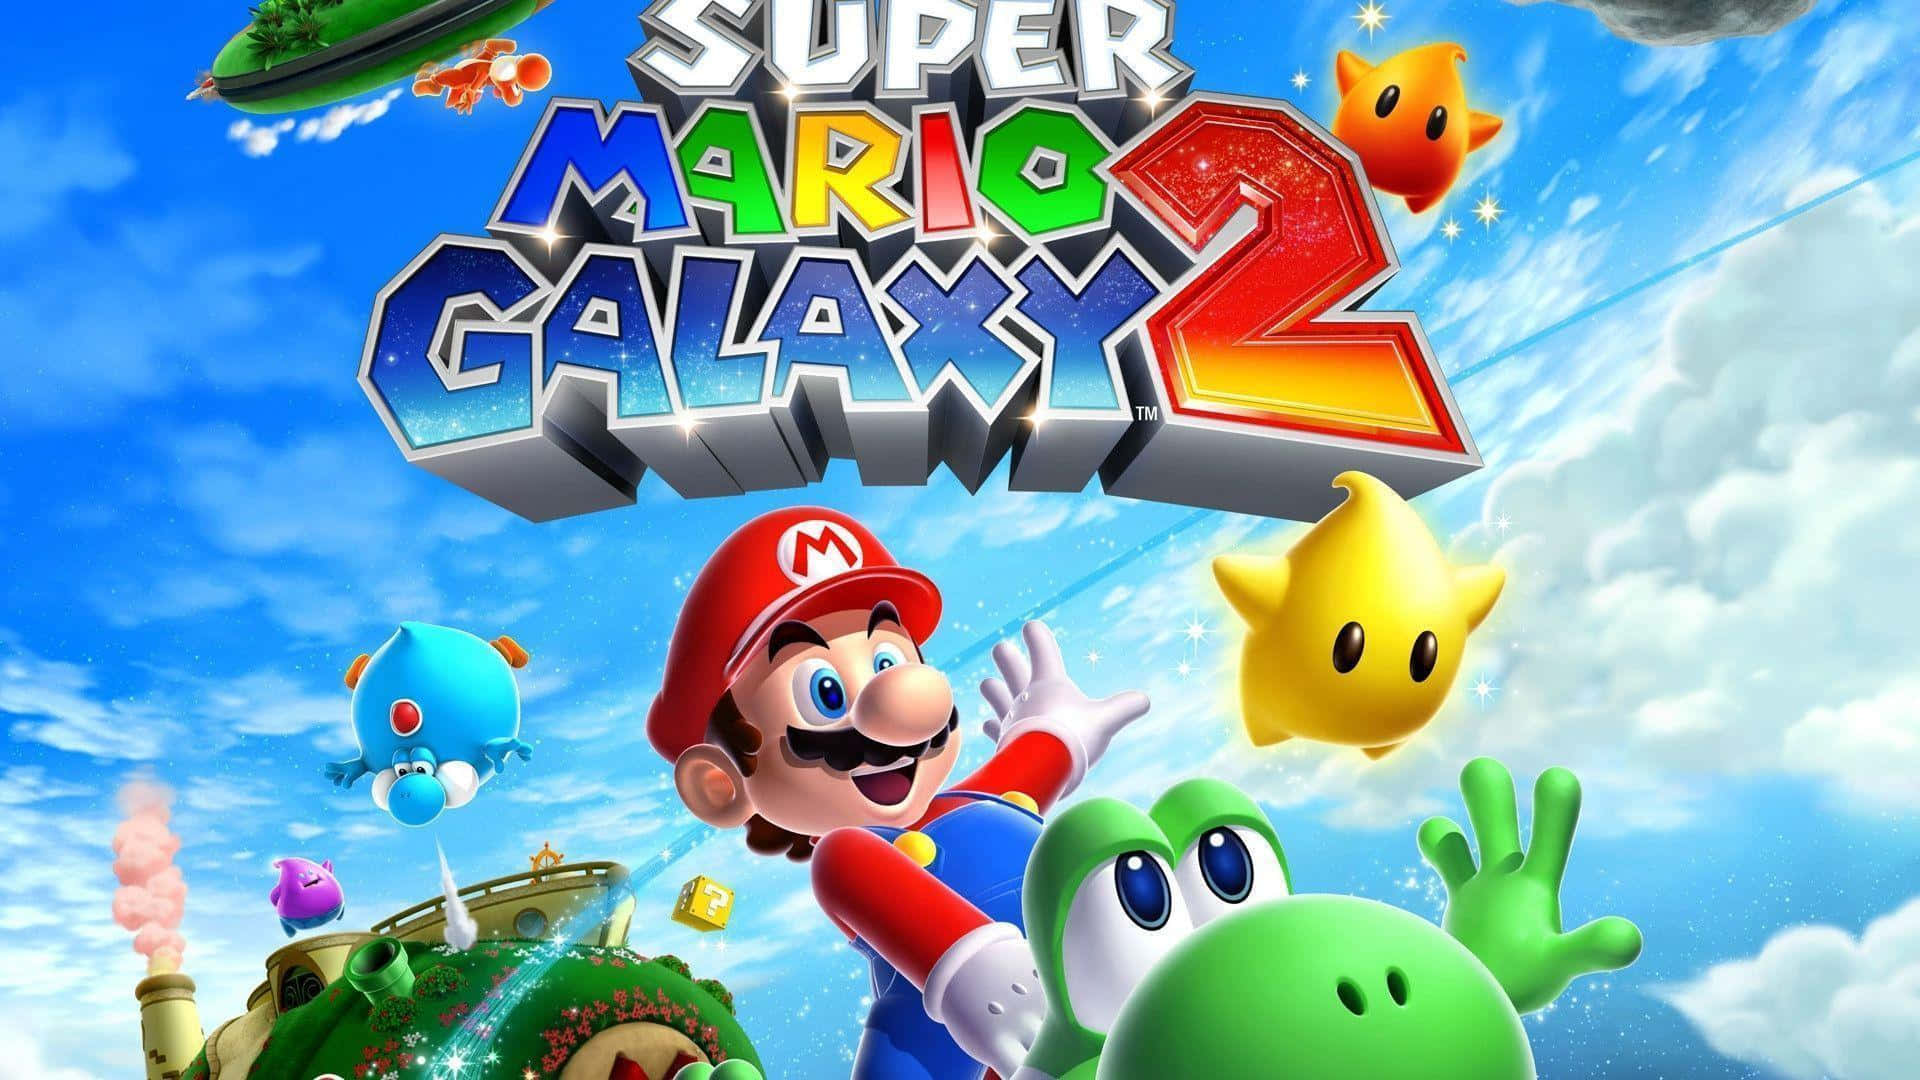 Rejsgennem Mælkevejen På Jagt Efter Stjerner I Super Mario Galaxy. Wallpaper